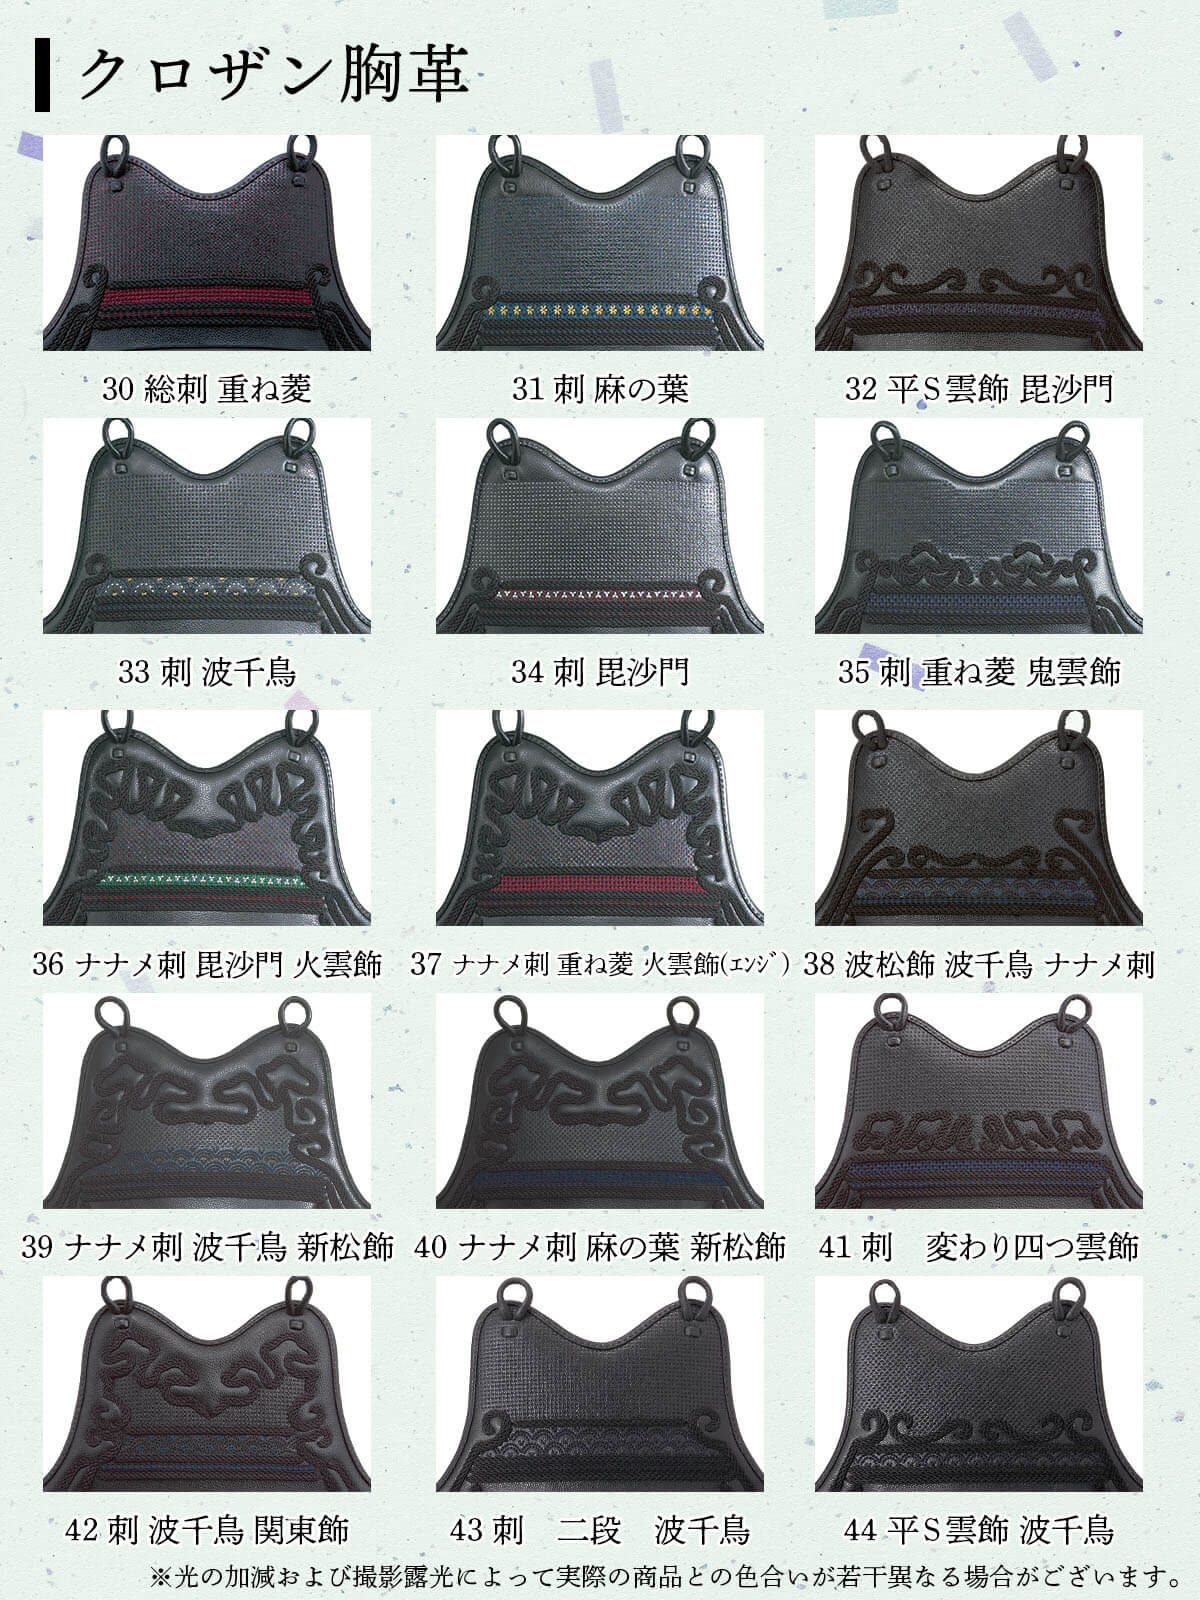 【 オーダー 】クロザン革胸 15種類 カスタム胴 胴胸サイズM/L [KD-KZ15]